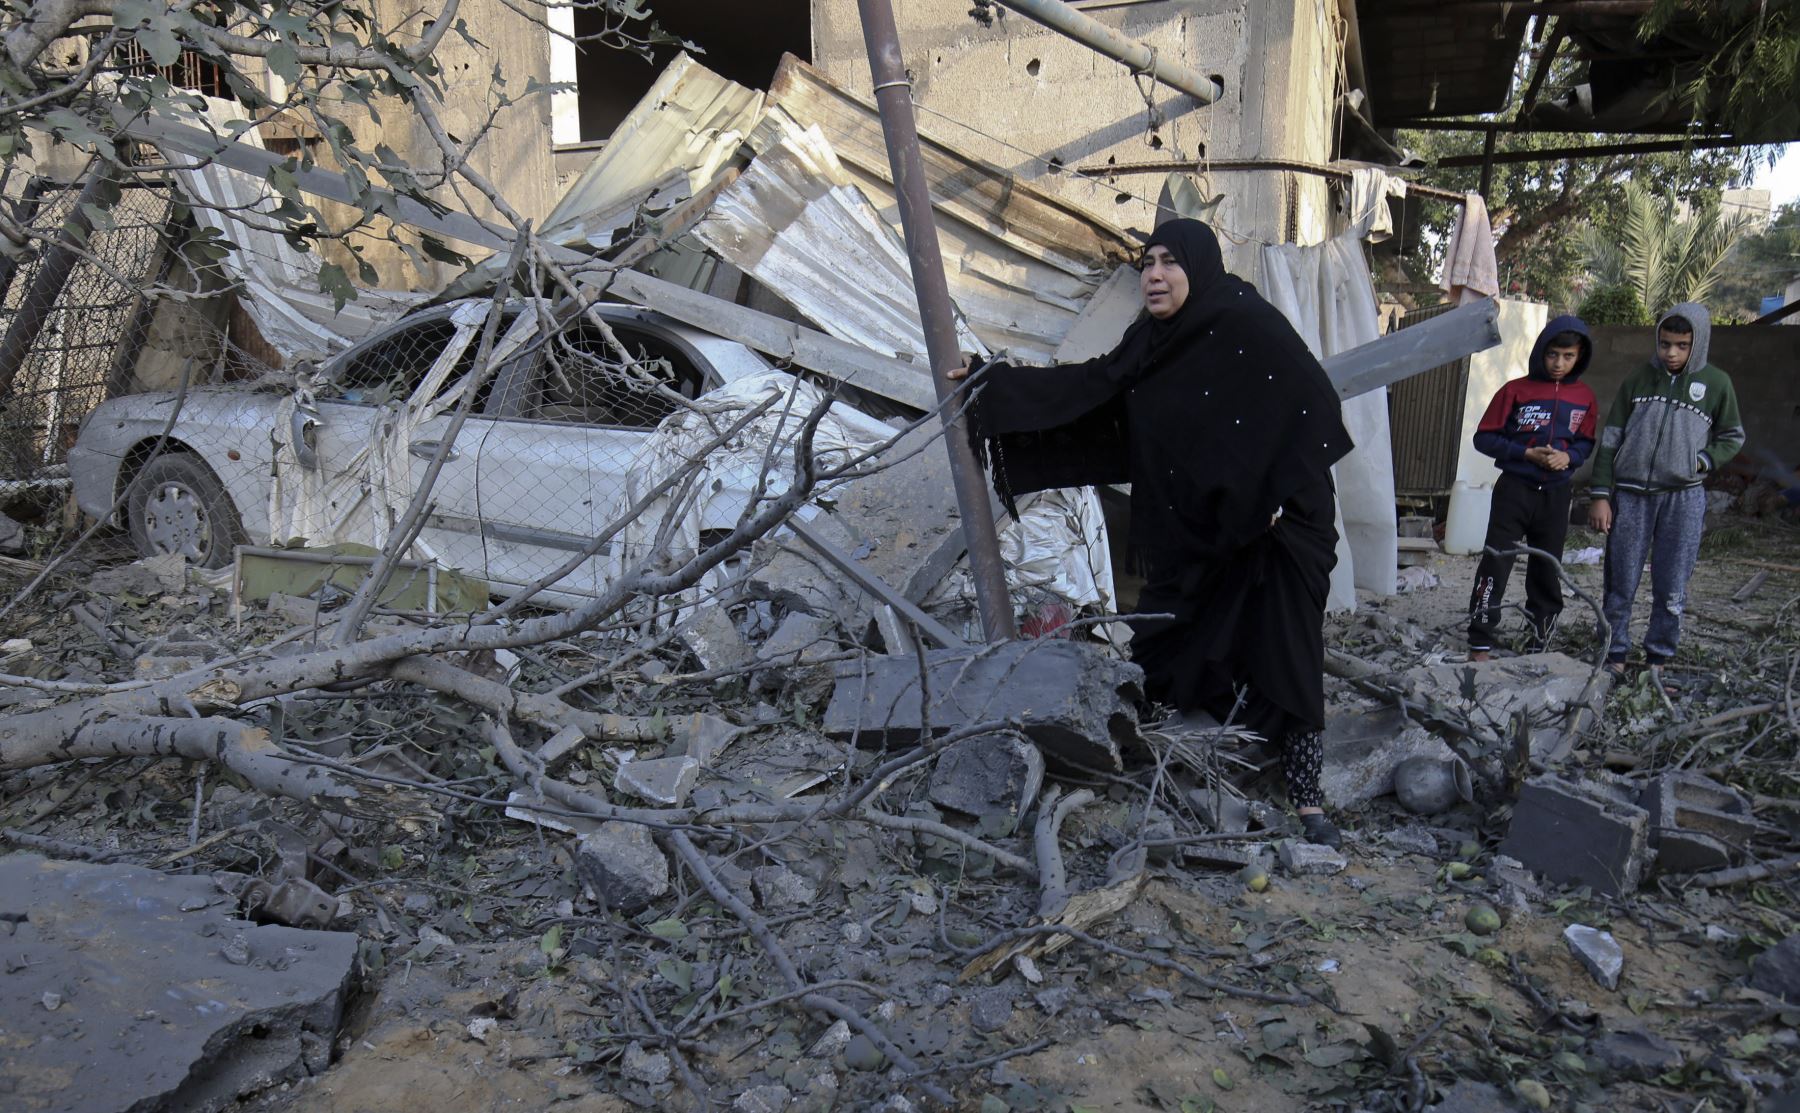 Palestinos caminan en medio de escombros de un edificio residencial que fue destruido en un ataque aéreo israelí en Khan Yunis en el sur de la Franja de Gaza el 13 de noviembre de 2018. - El avión de Israel impactó en Gaza el 12 de noviembre, después de una descarga de cohetes desde su territorio. enclave. El estallido se produjo después de una operación letal de las fuerzas especiales israelíes en la Franja de Gaza el fin de semana que dejó a Hamas jurando venganza.  AFP